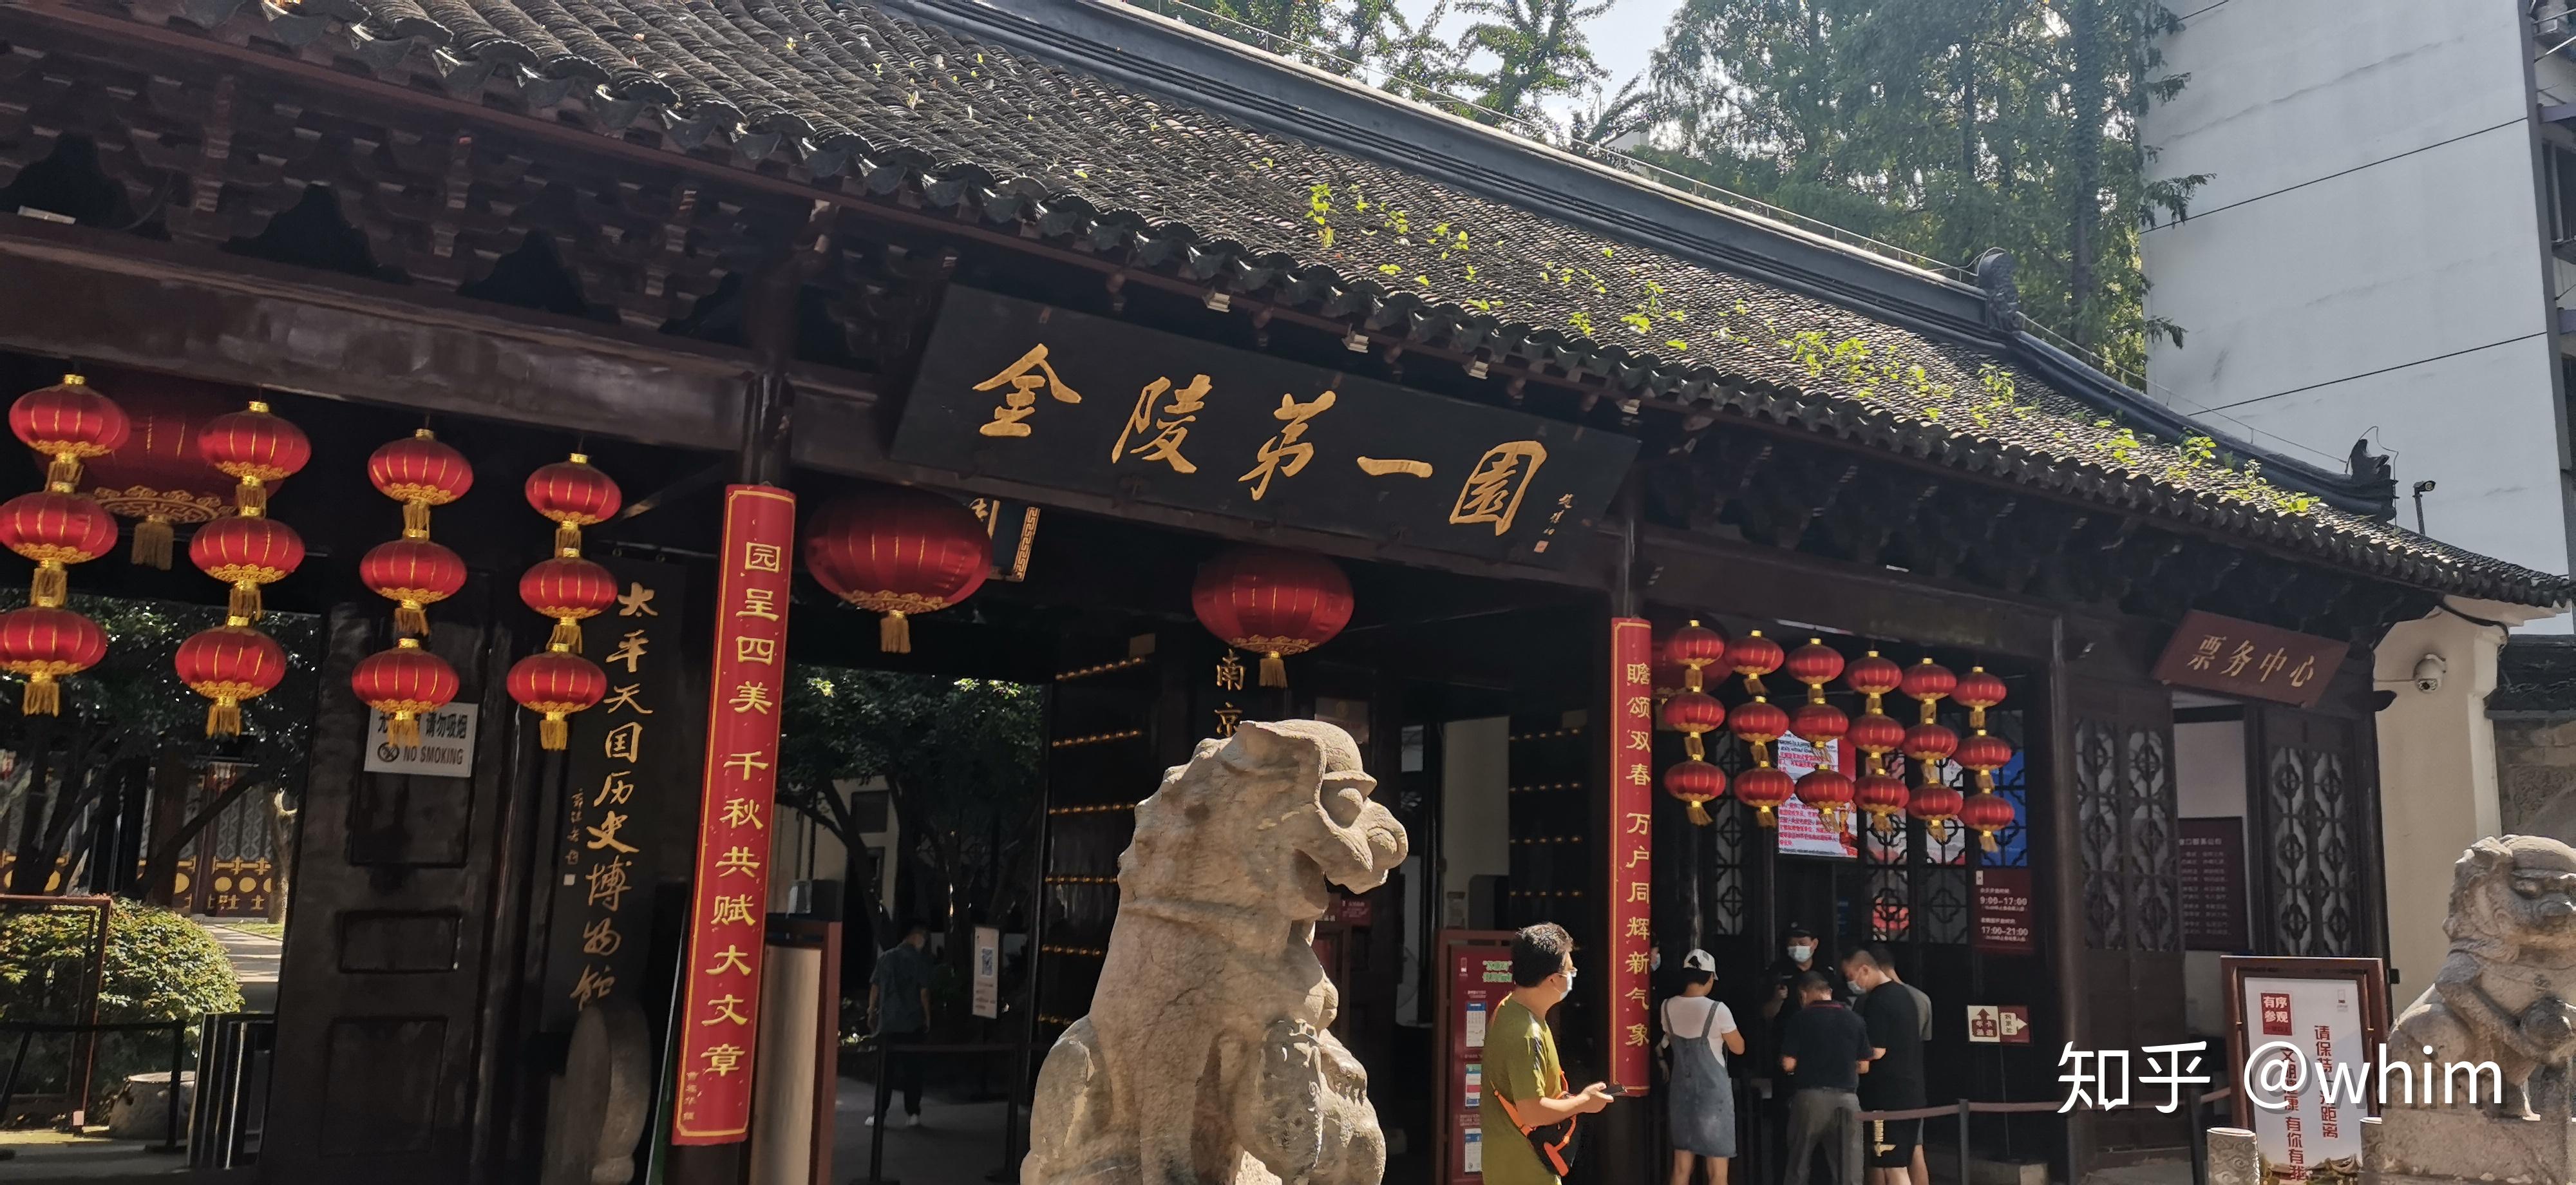 瞻园正门昨天预约好了,本来直奔南京博物馆了,然后在逛早餐店的路上